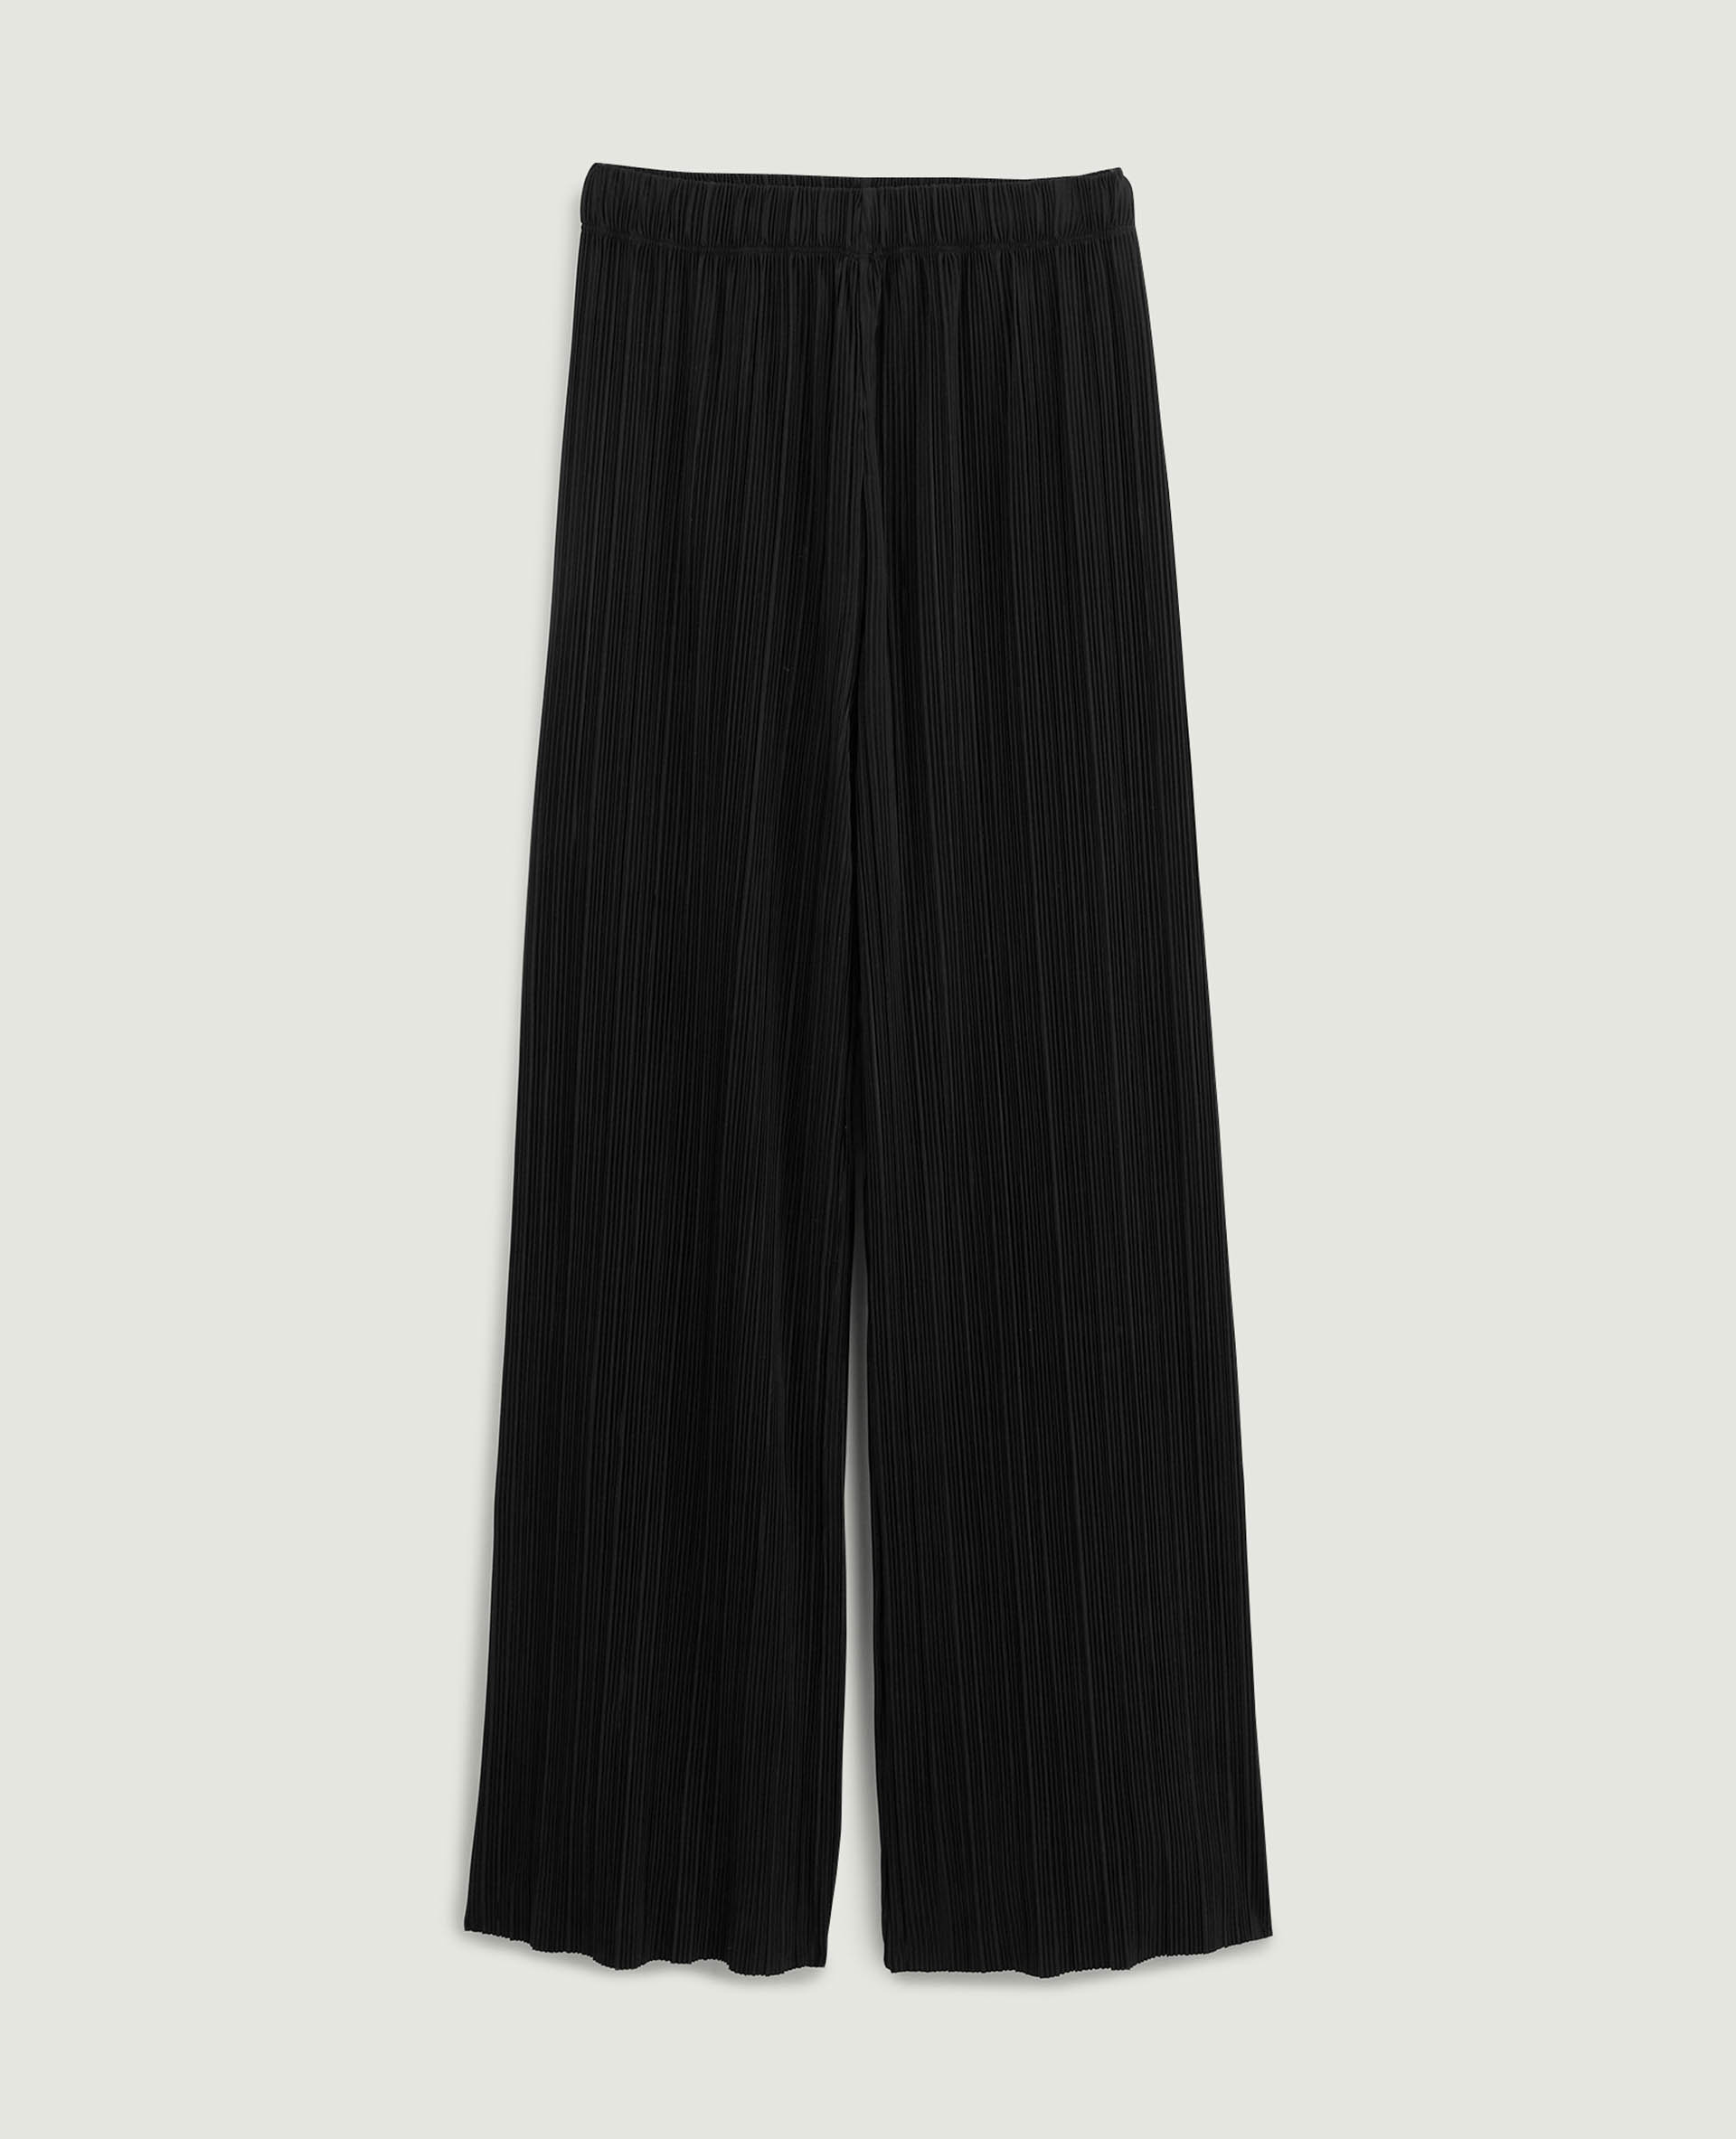 Pantalon large maille plissée noir - Pimkie